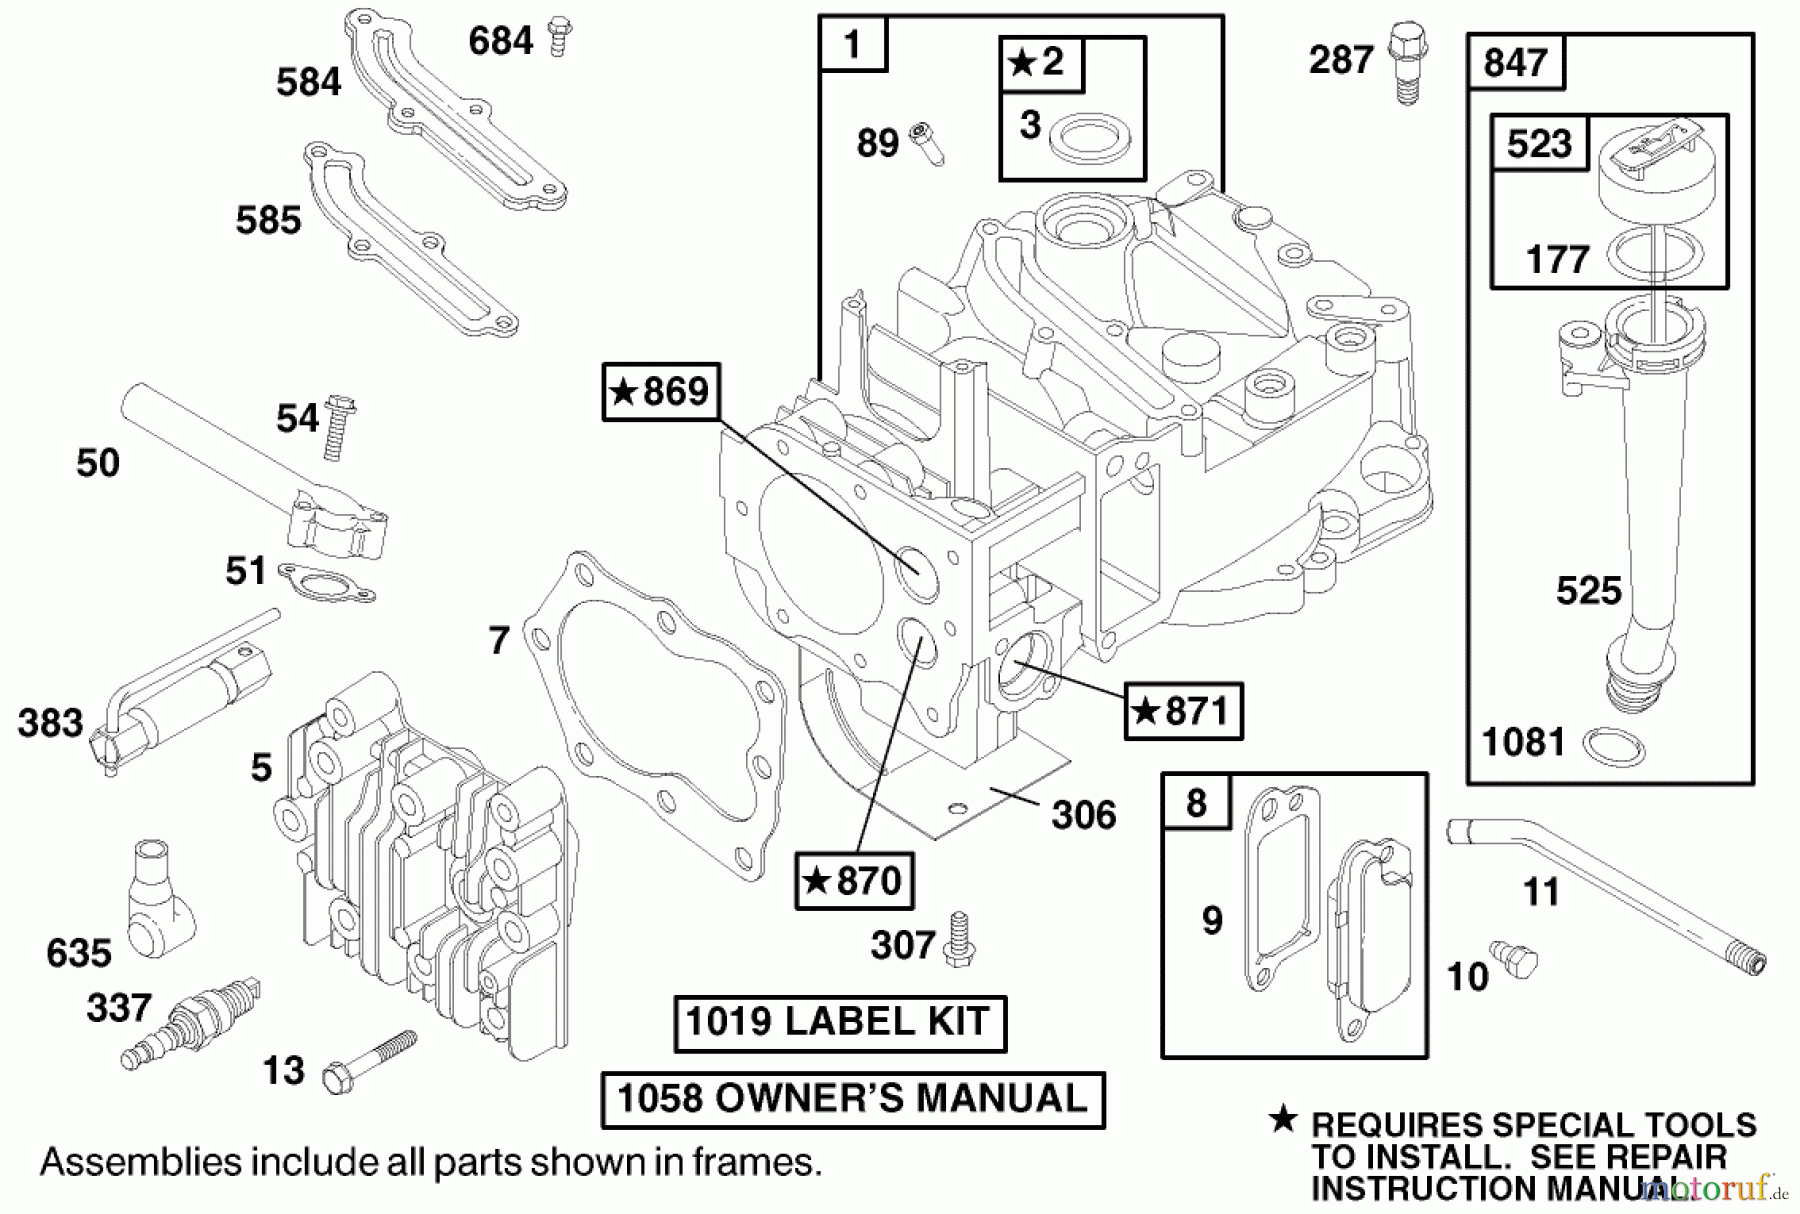  Toro Neu Mowers, Walk-Behind Seite 1 20028 - Toro Recycler Mower, 2000 (200000001-200999999) ENGINE BRIGGS & STRATTON MODEL 12J802-2368-E1 #1